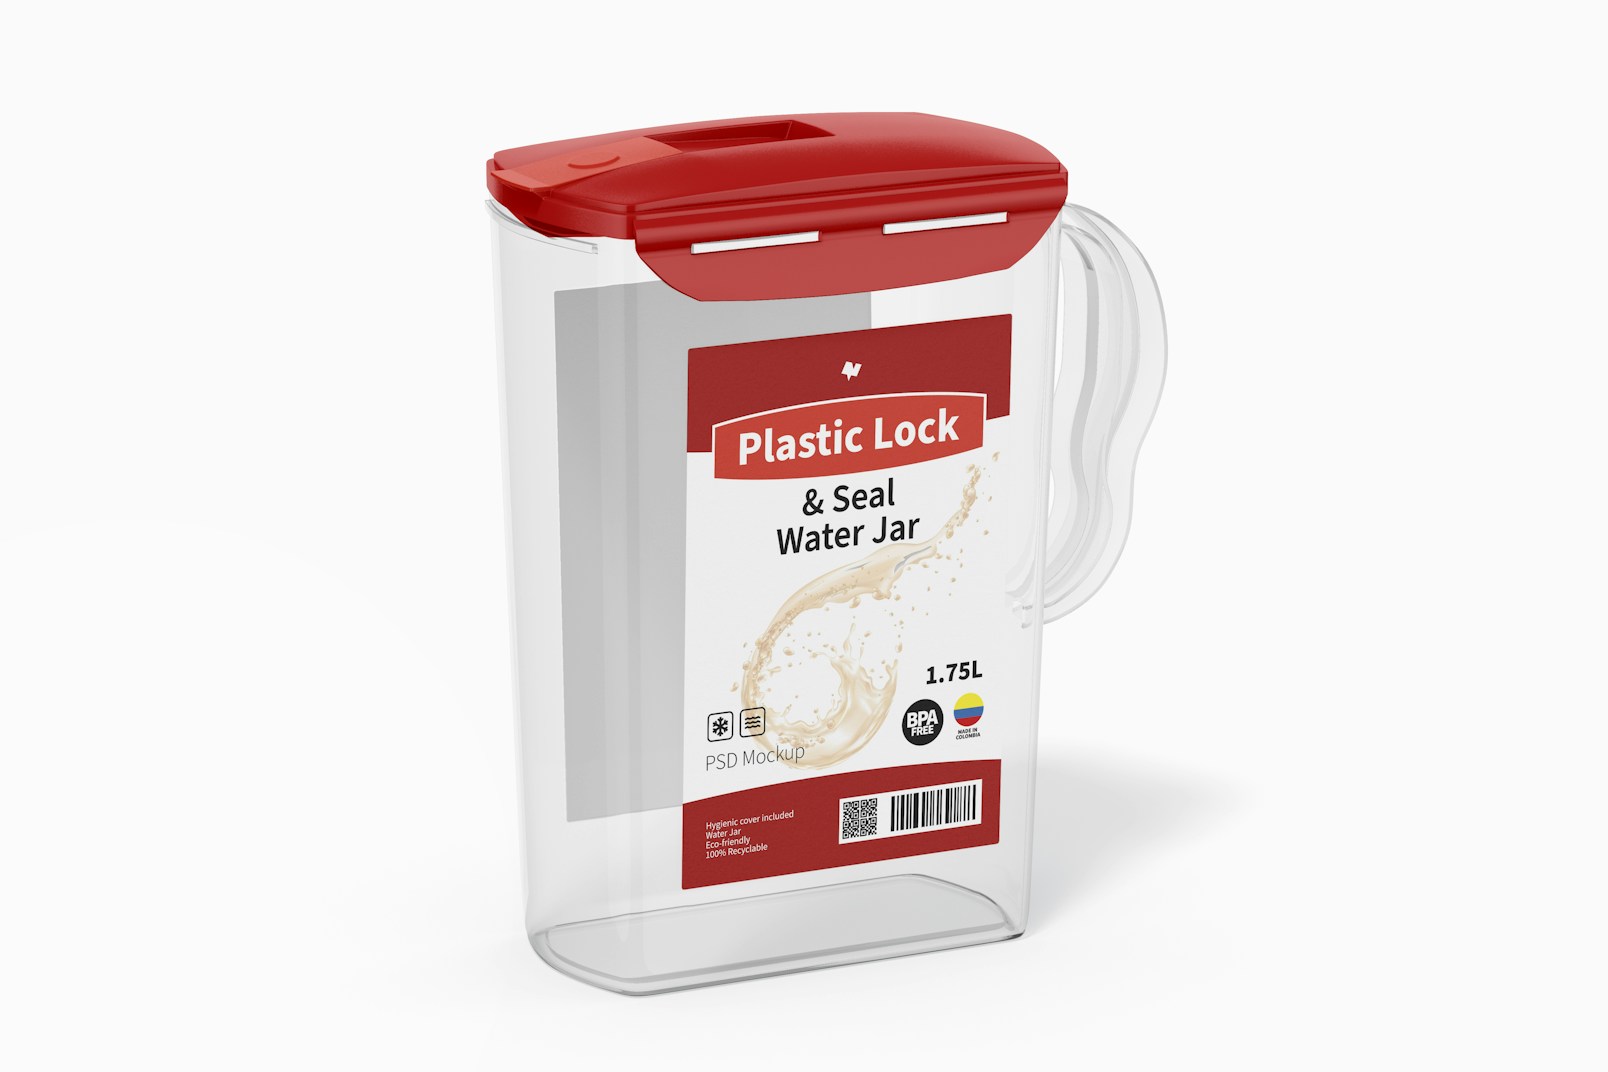 Plastic Lock and Seal Water Jar Mockup